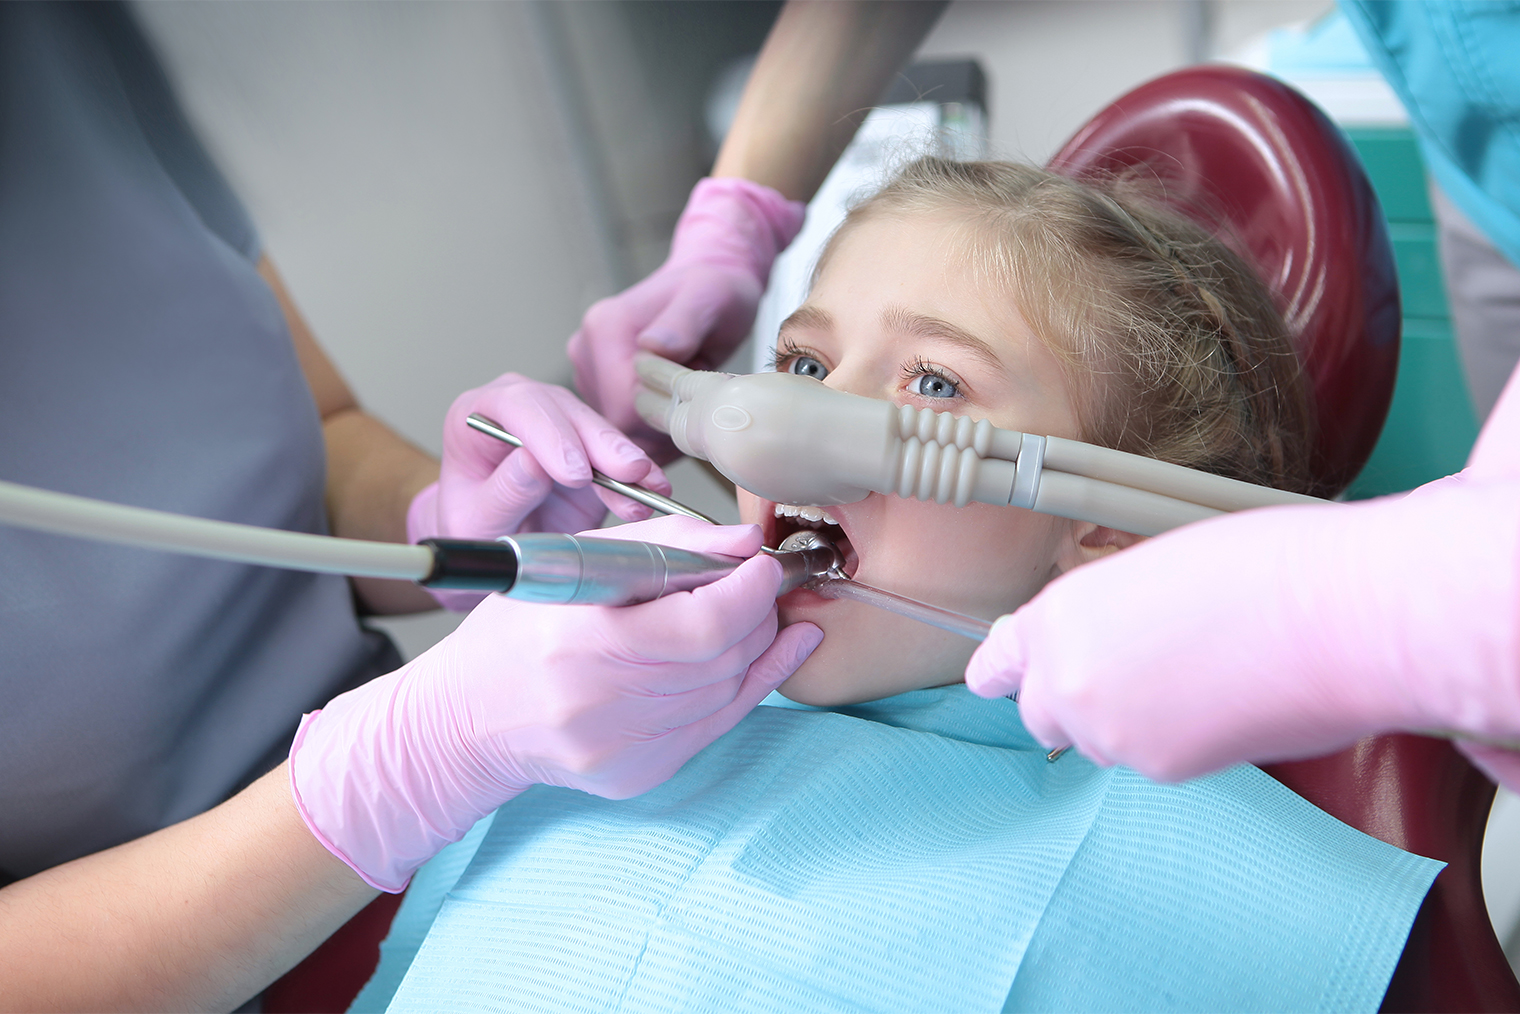 Седация веселящим газом в детской стоматологии. Фотография: RusAKphoto / Shutterstock / FOTODOM